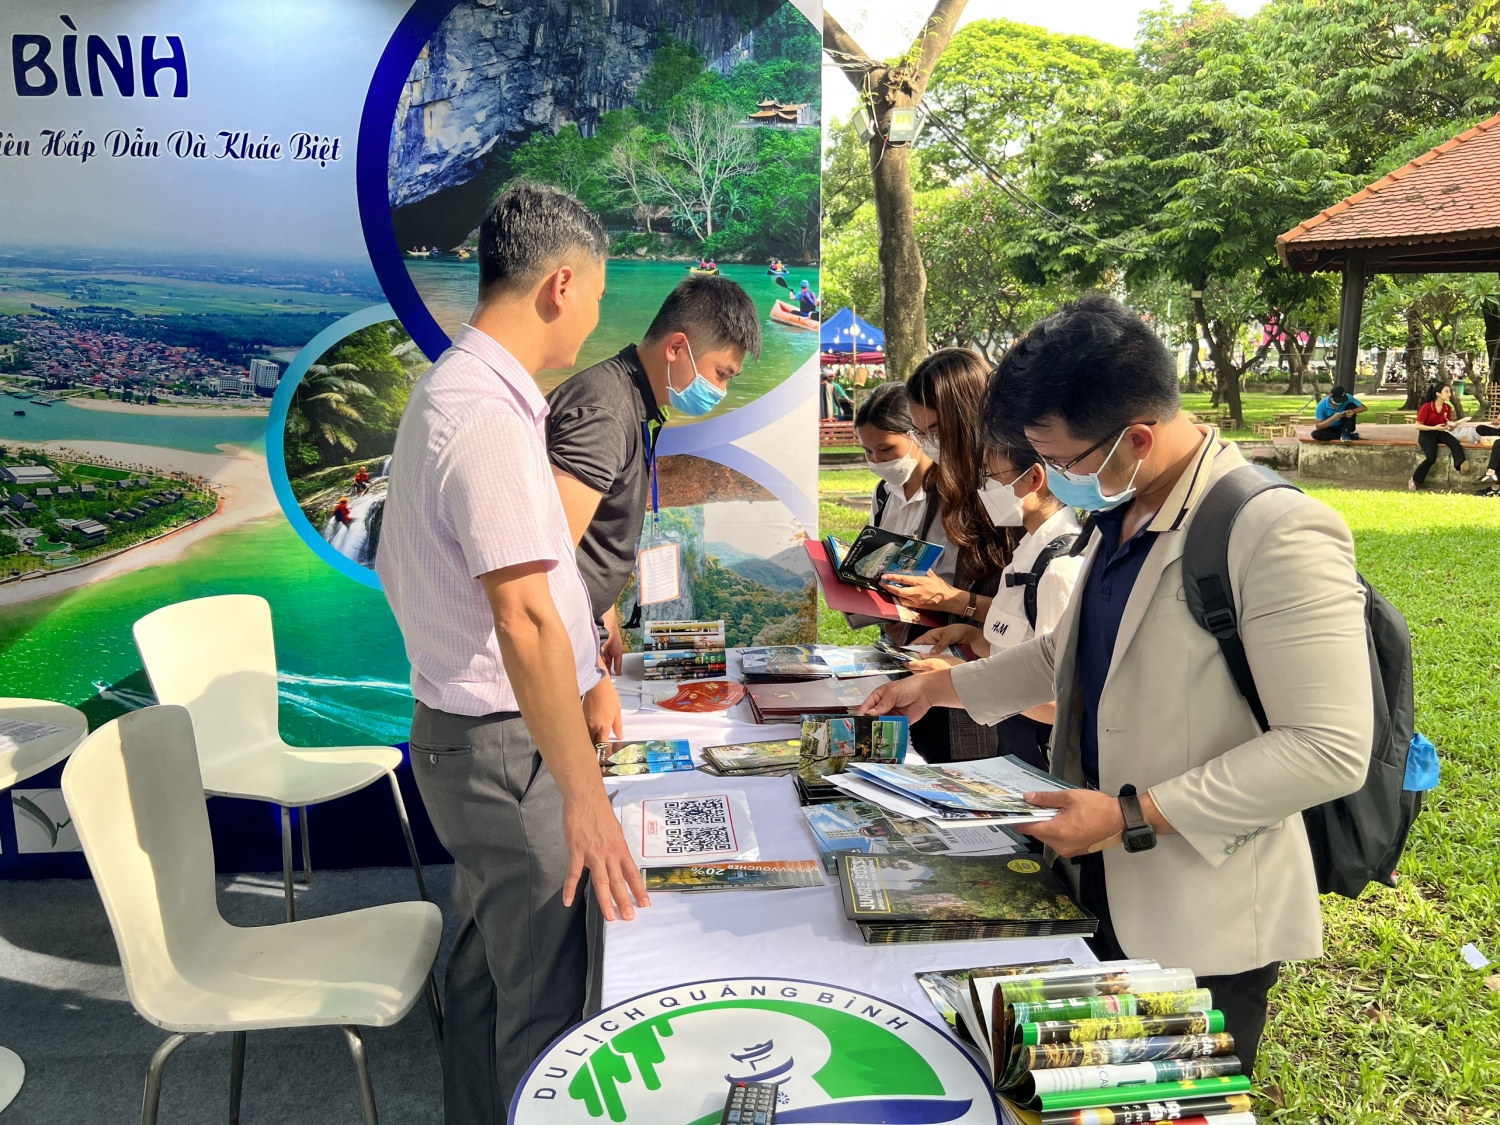 Quảng Bình tham gia Ngày hội du lịch TP. Hồ Chí Minh lần thứ 18 với thông điệp “Điểm đến thiên nhiên hấp dẫn và khác biệt”